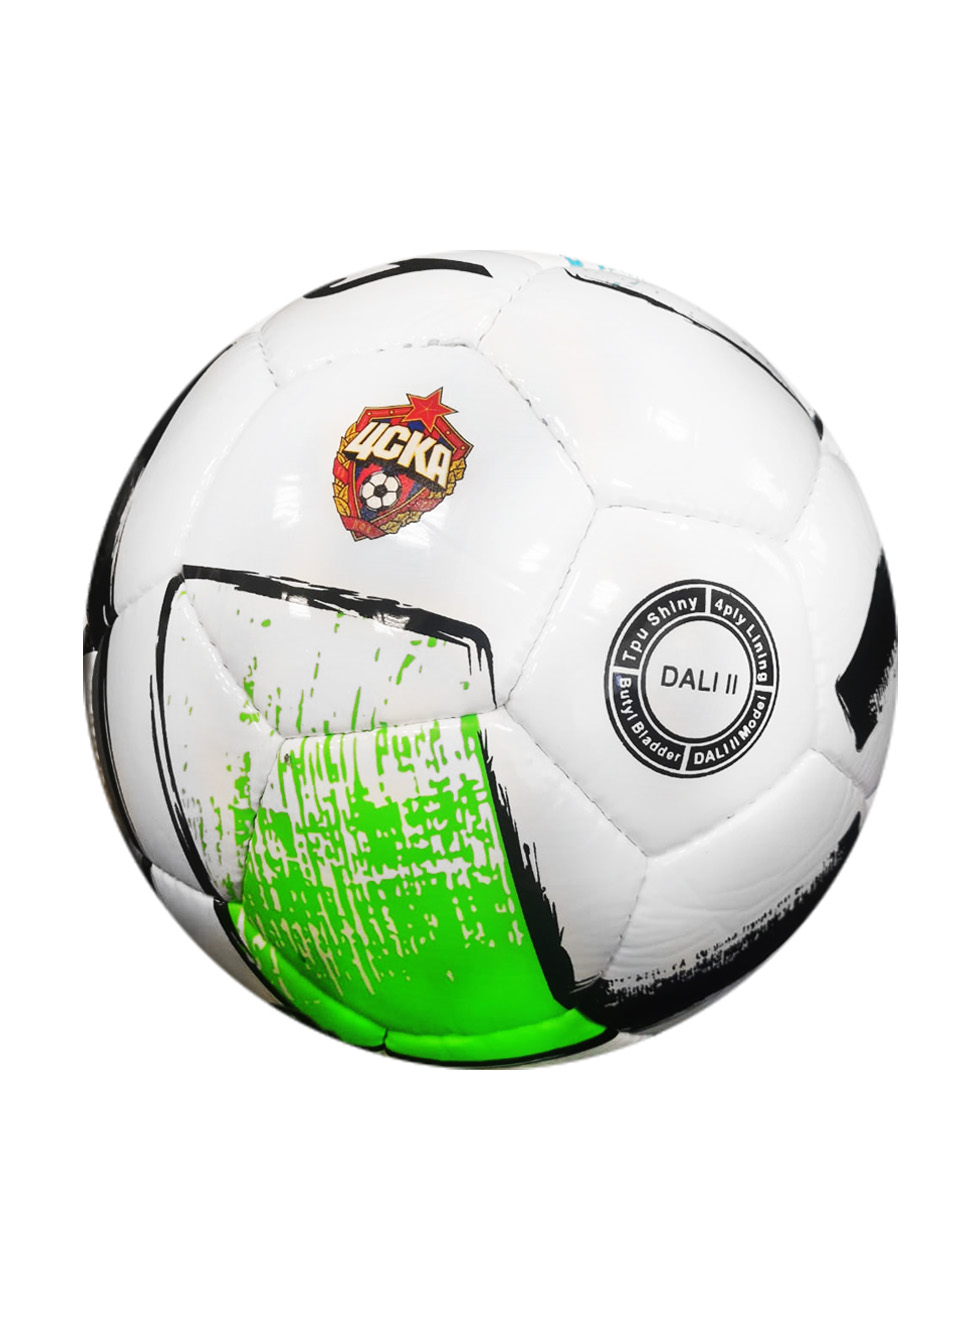 Мяч футбольный Joma DALI 2 с эмблемой ПФК ЦСКА, размер 5 400649.211-1